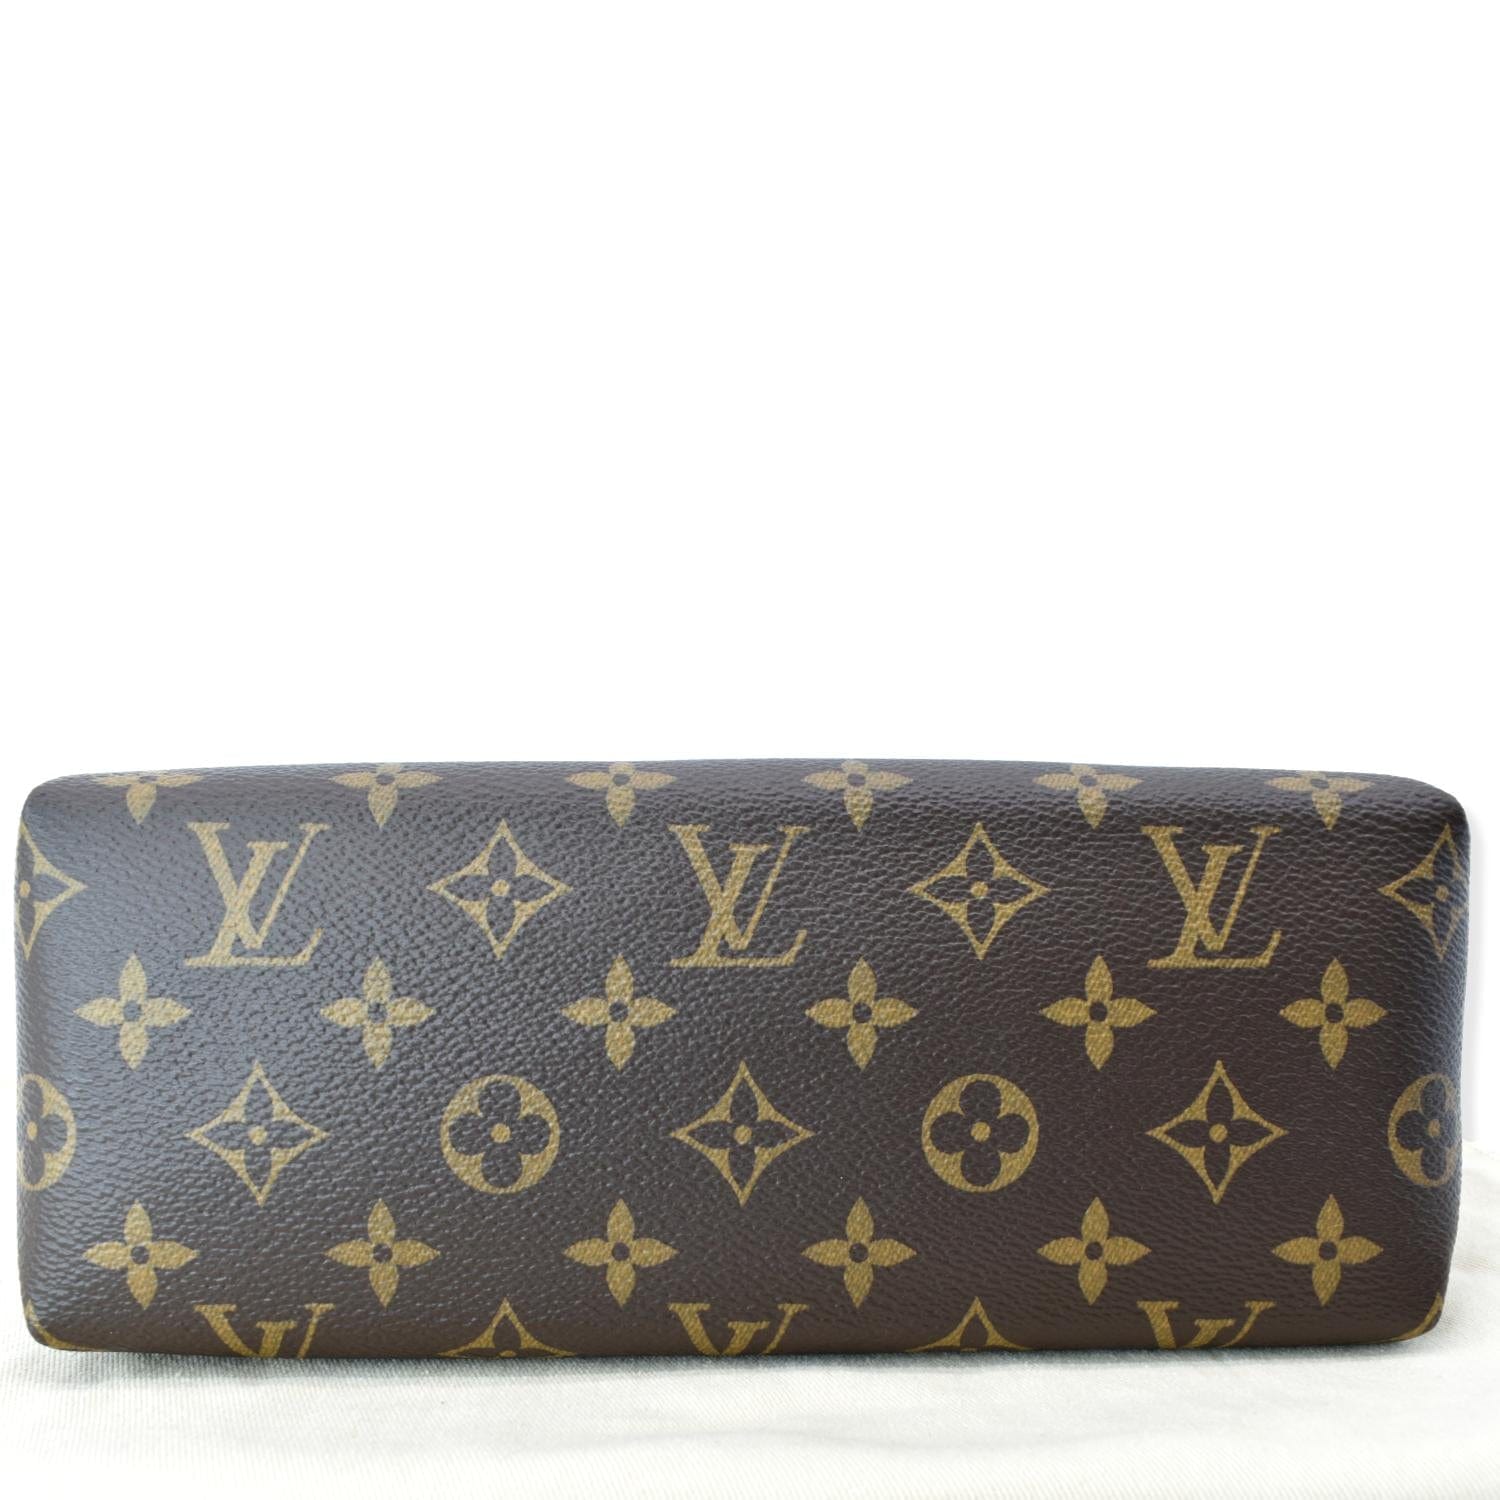 Louis Vuitton Pallas beauty case (M64123)